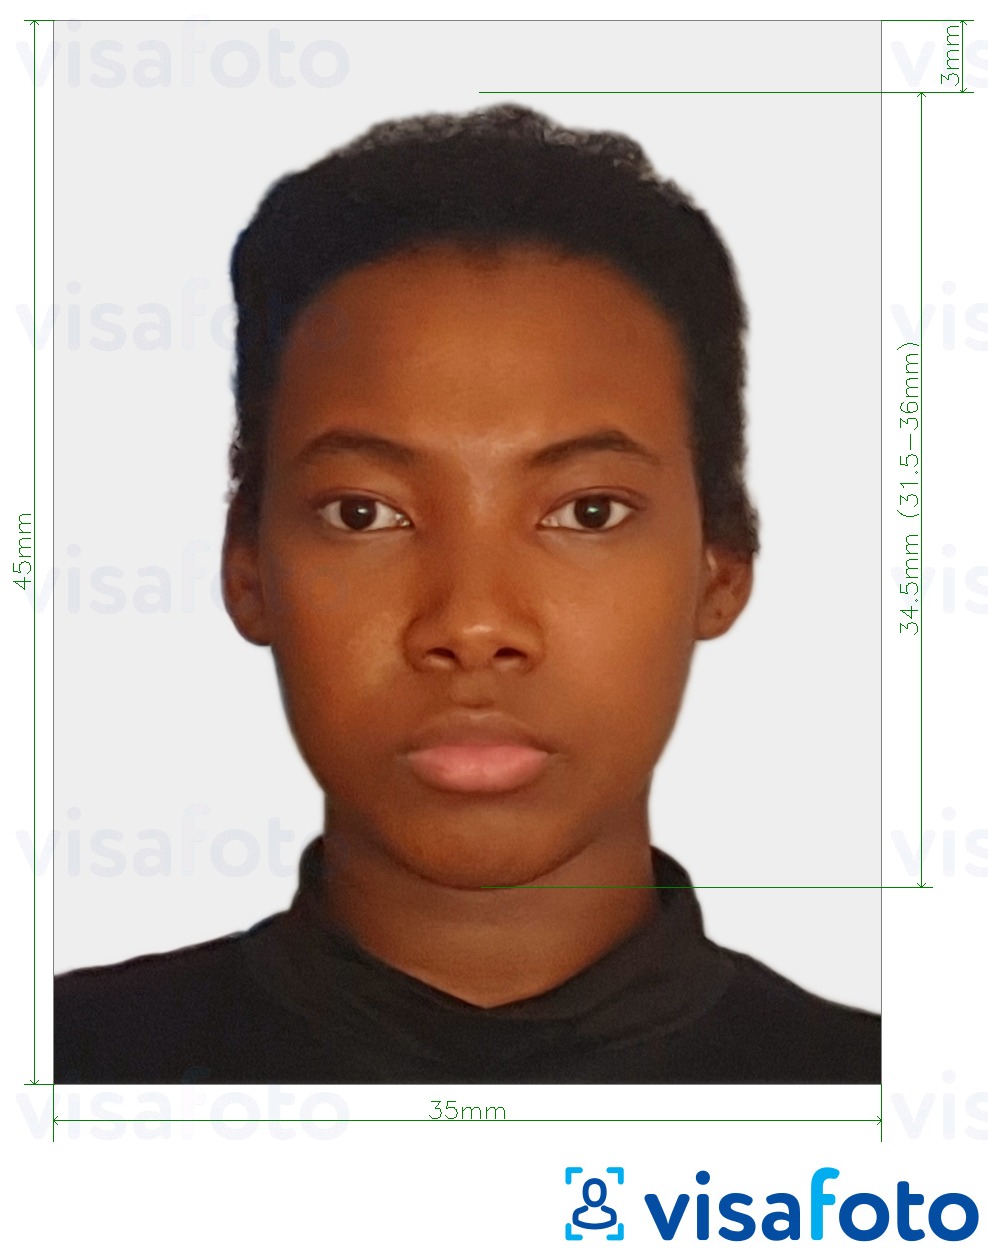 Eksempel på billede for Surinam visum online med præcis størrelsesspecifikation.